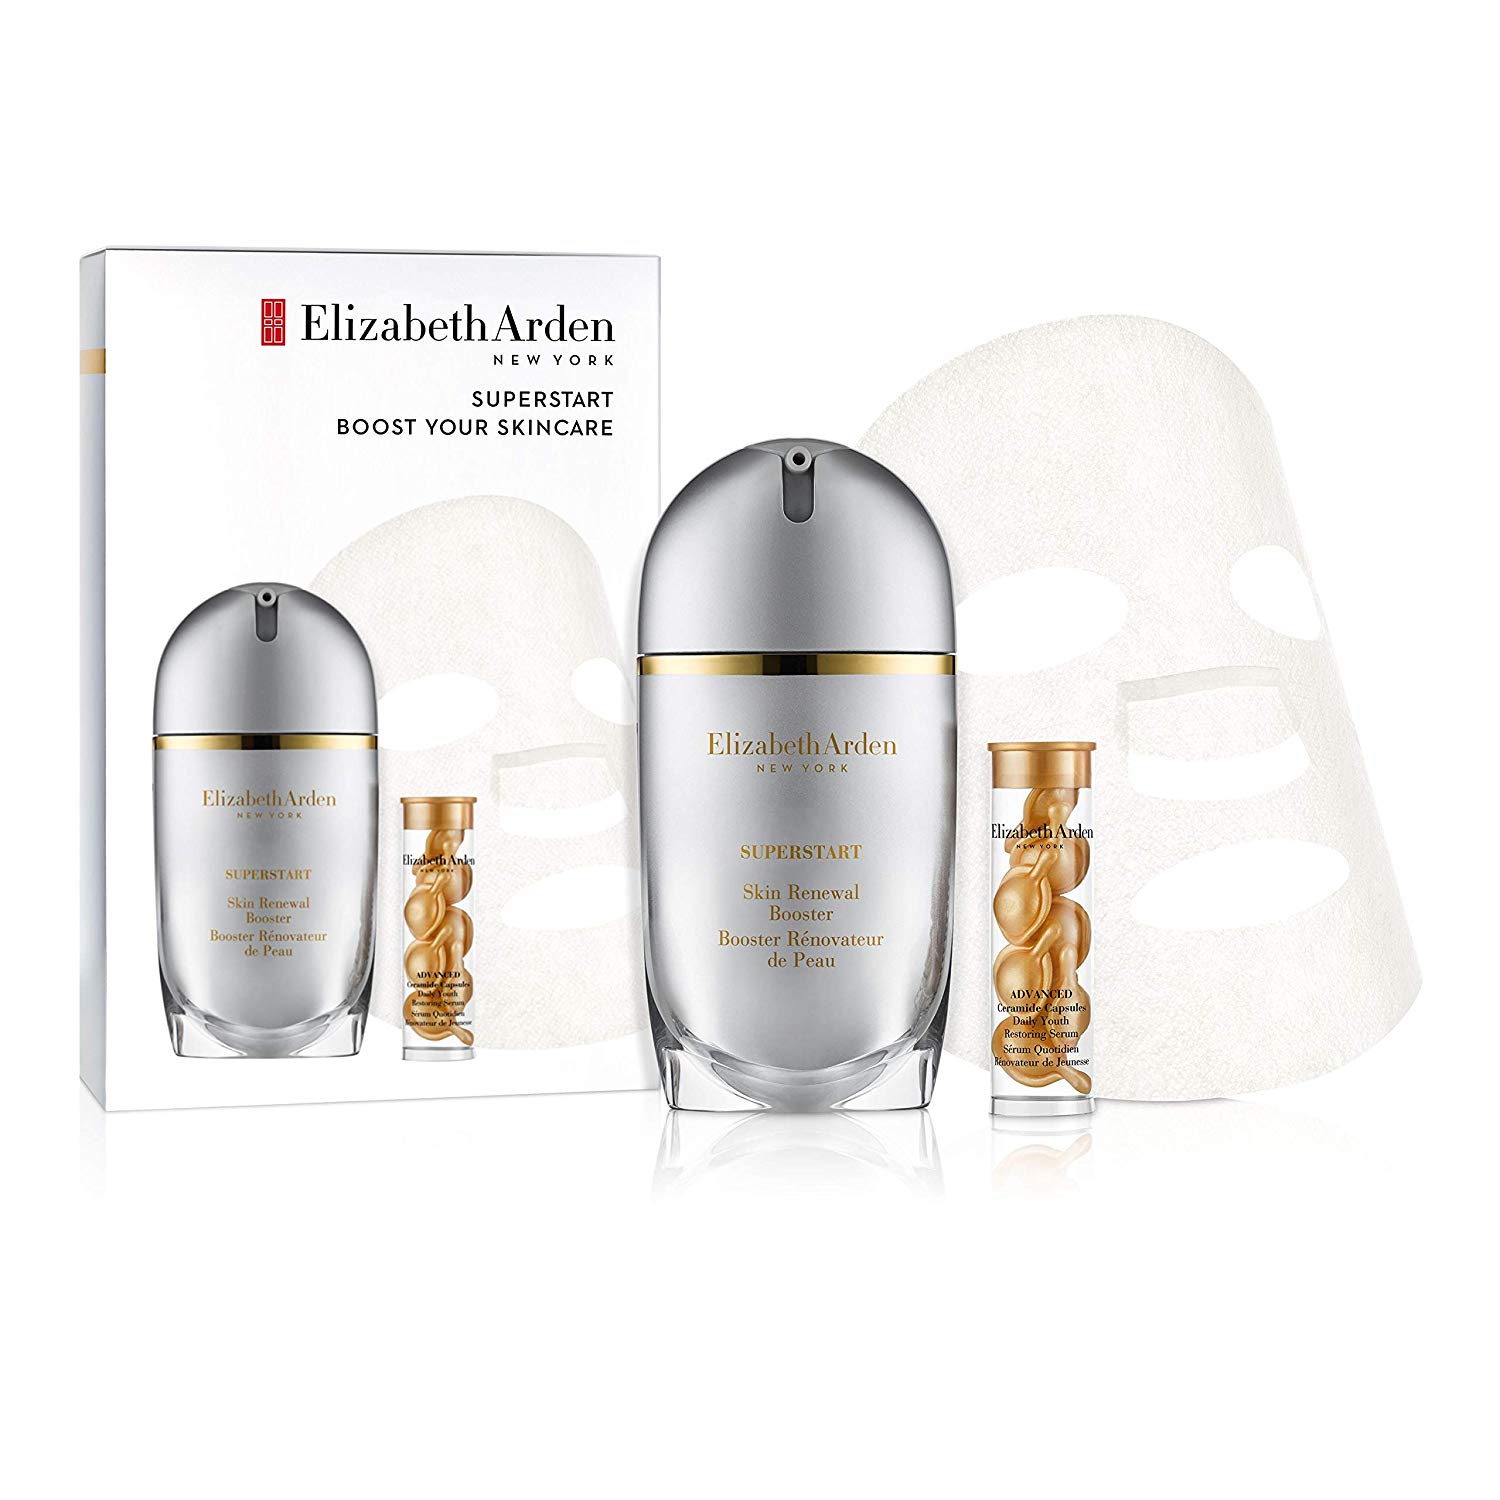 Elizabeth Arden Superstart Boost Your Skincare Gift Set 30ml Skin Renewal Booster + 7 Ceramide Capsule Serum + 1 Sheet Mask